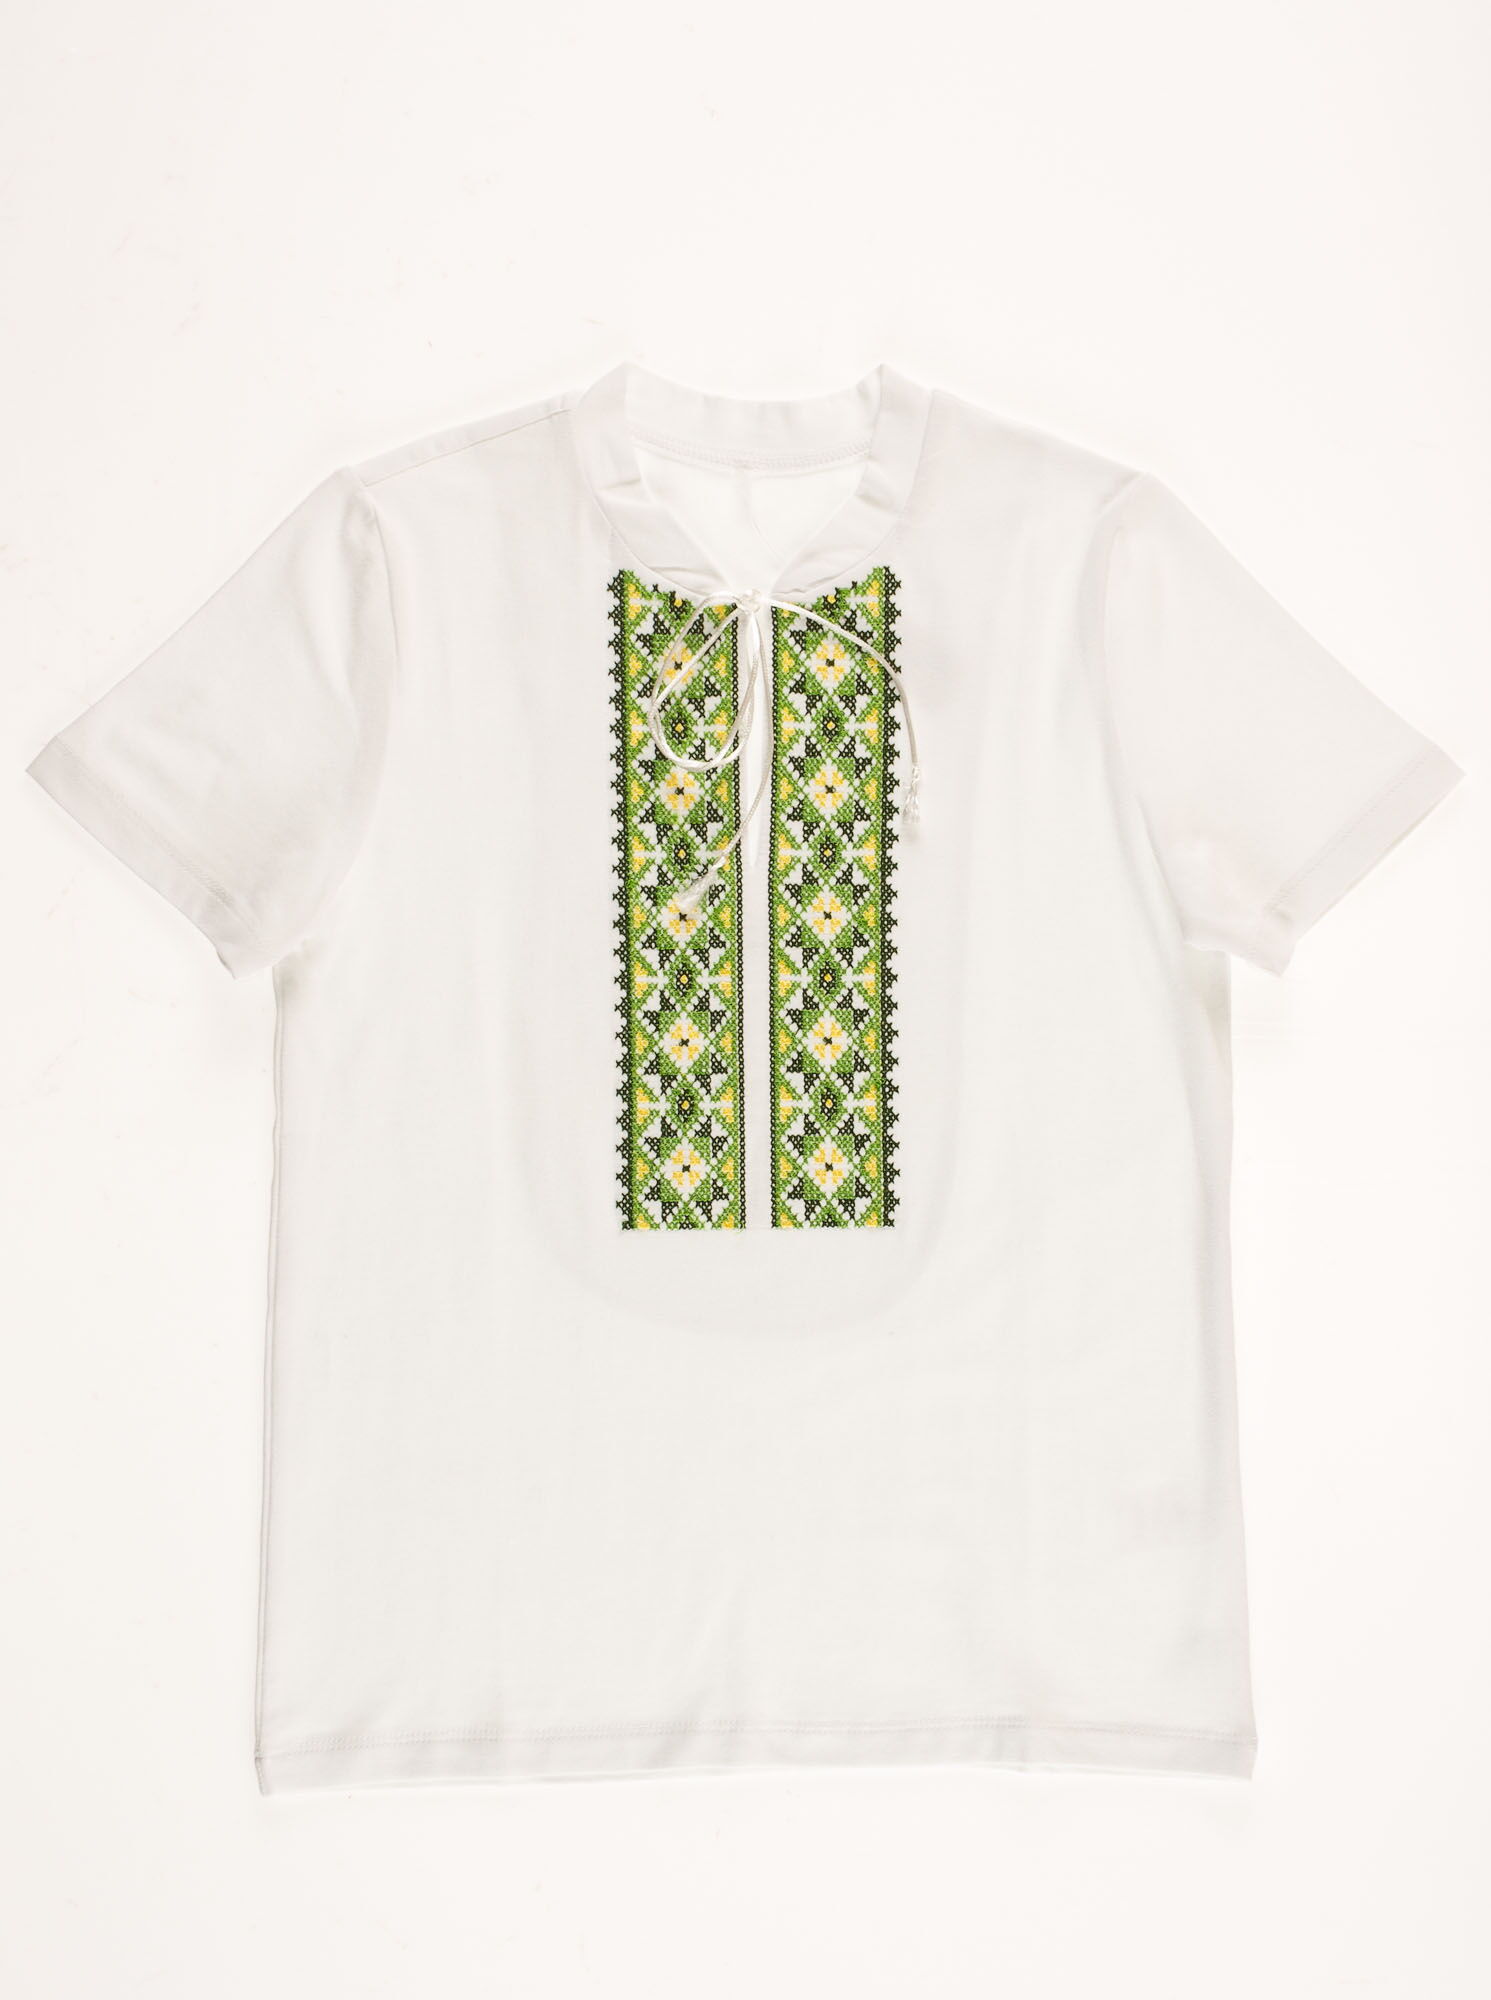 Вышиванка-футболка для мальчика Фабрика зеленая 6020В - цена